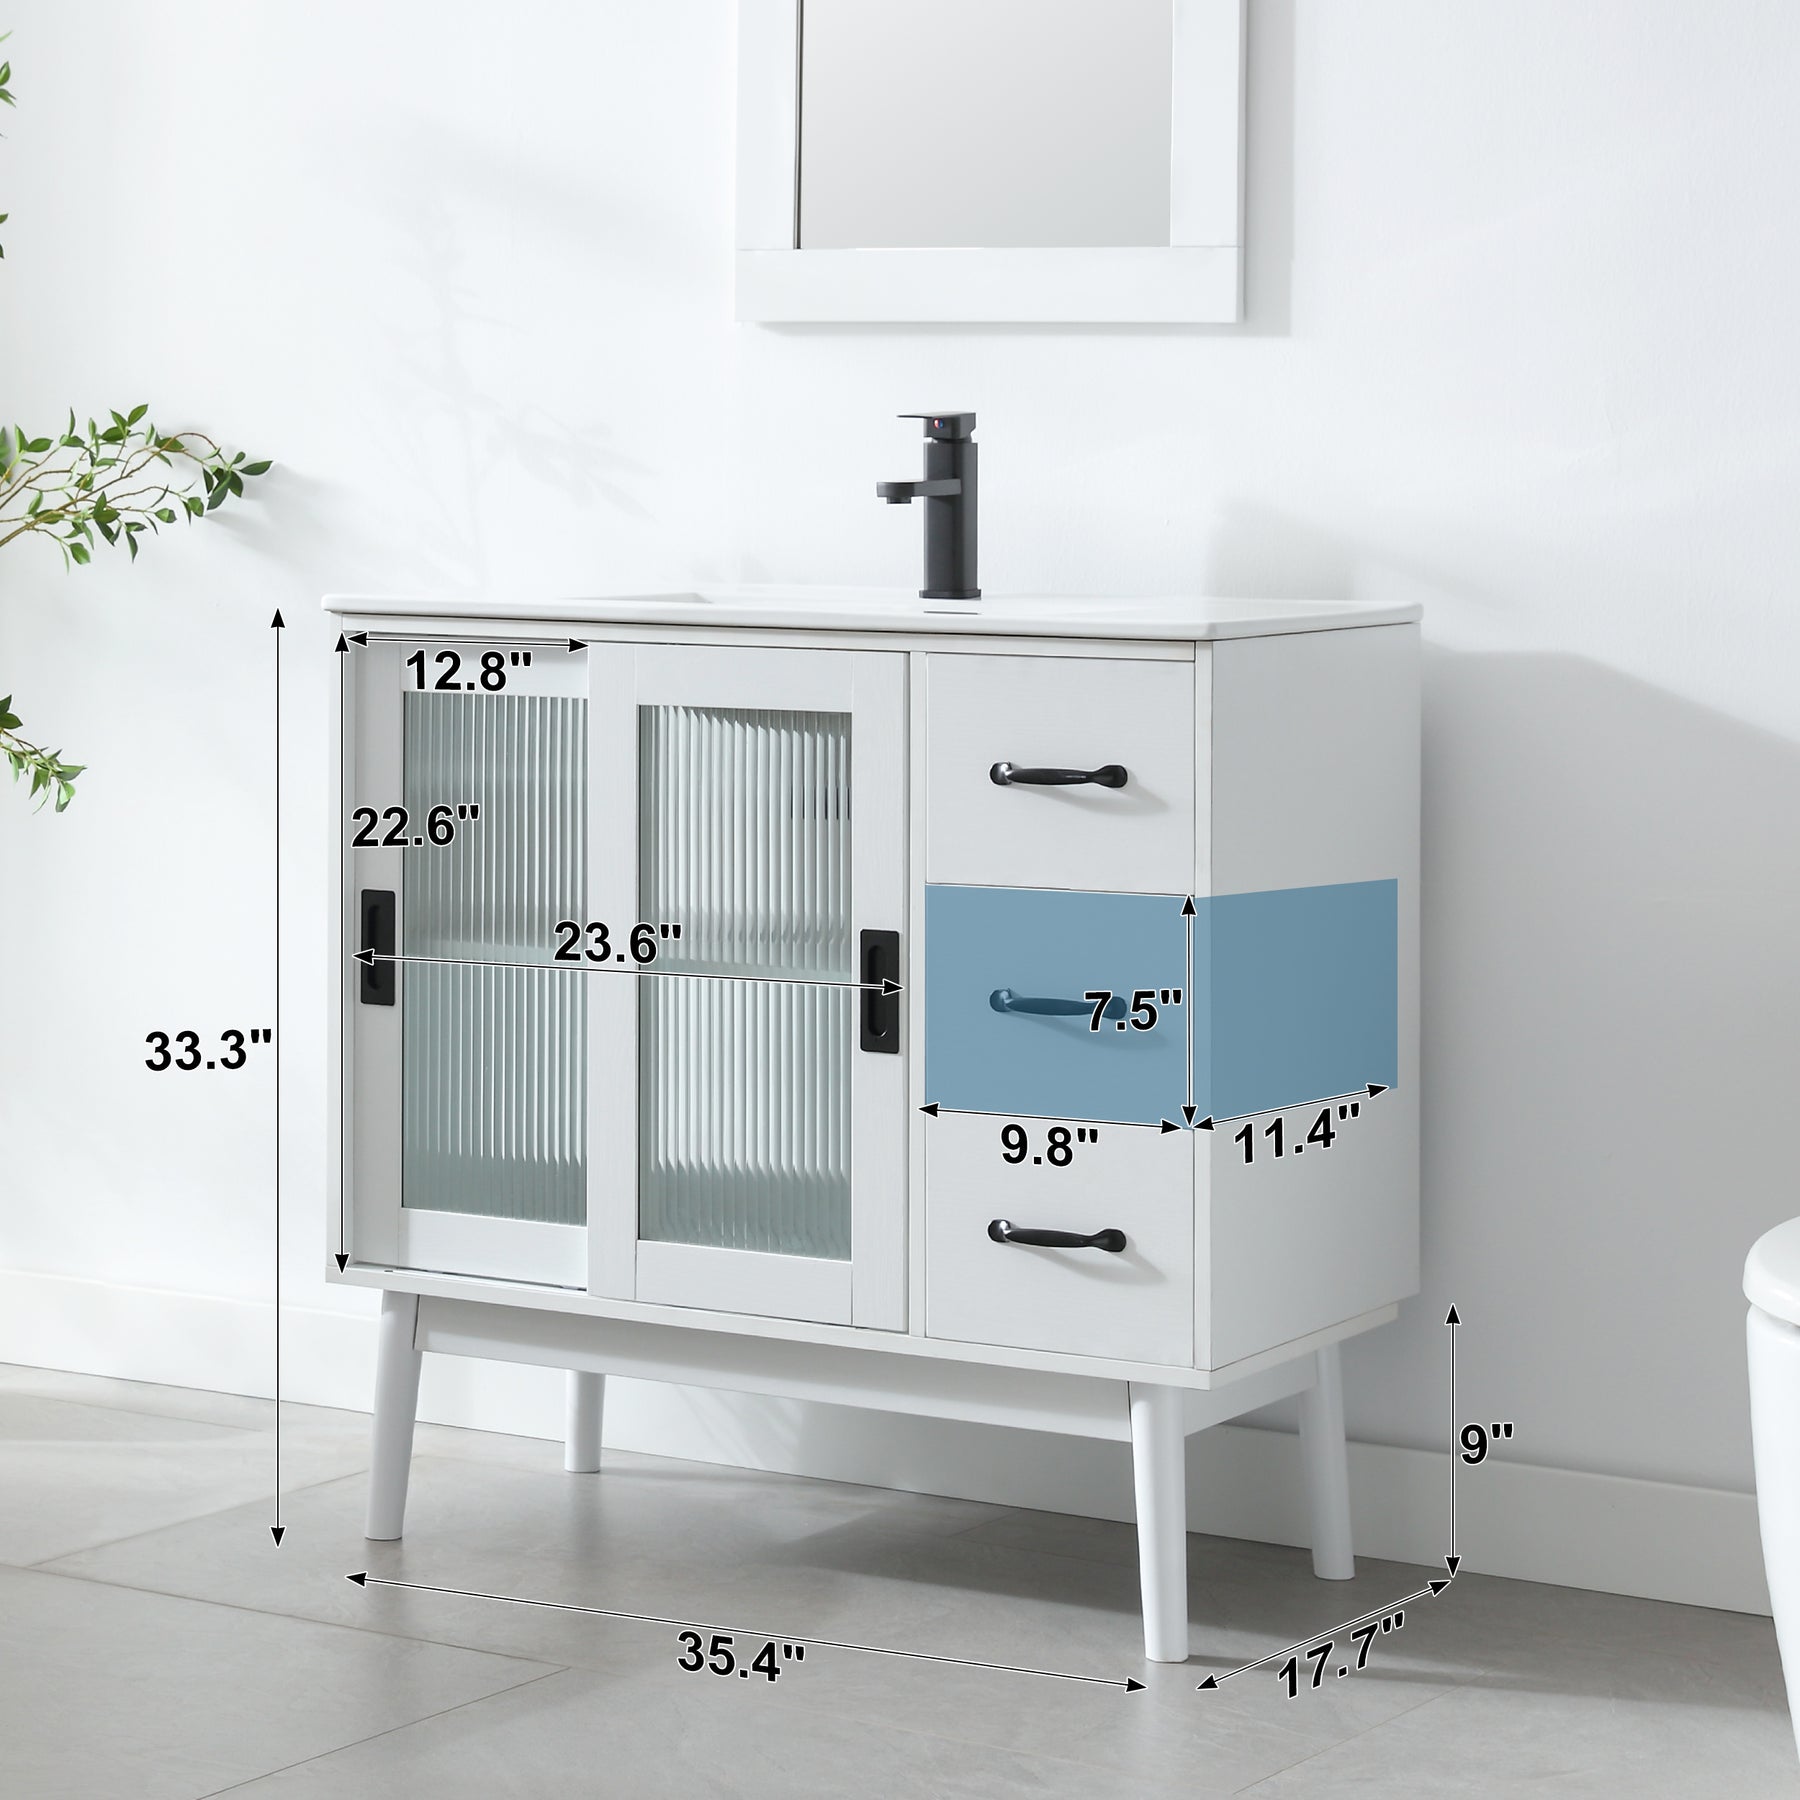 Outlet 36" Freestanding Bathroom Vanity Combo with Single Undermount Sink & Sliding Glass Door